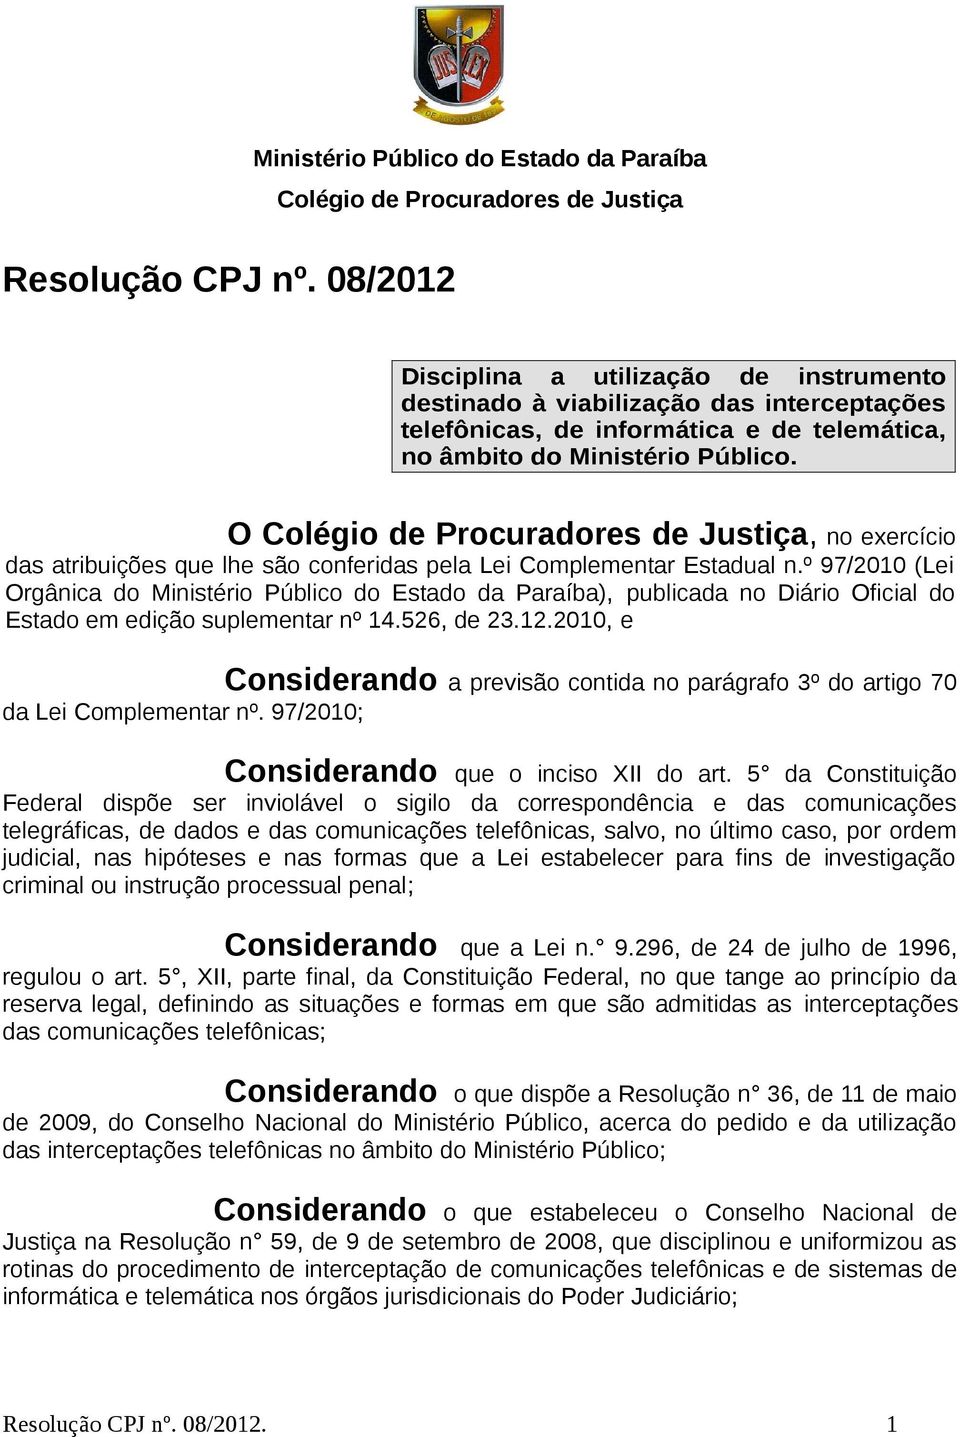 O Colégio de Procuradores de Justiça, no exercício das atribuições que lhe são conferidas pela Lei Complementar Estadual n.